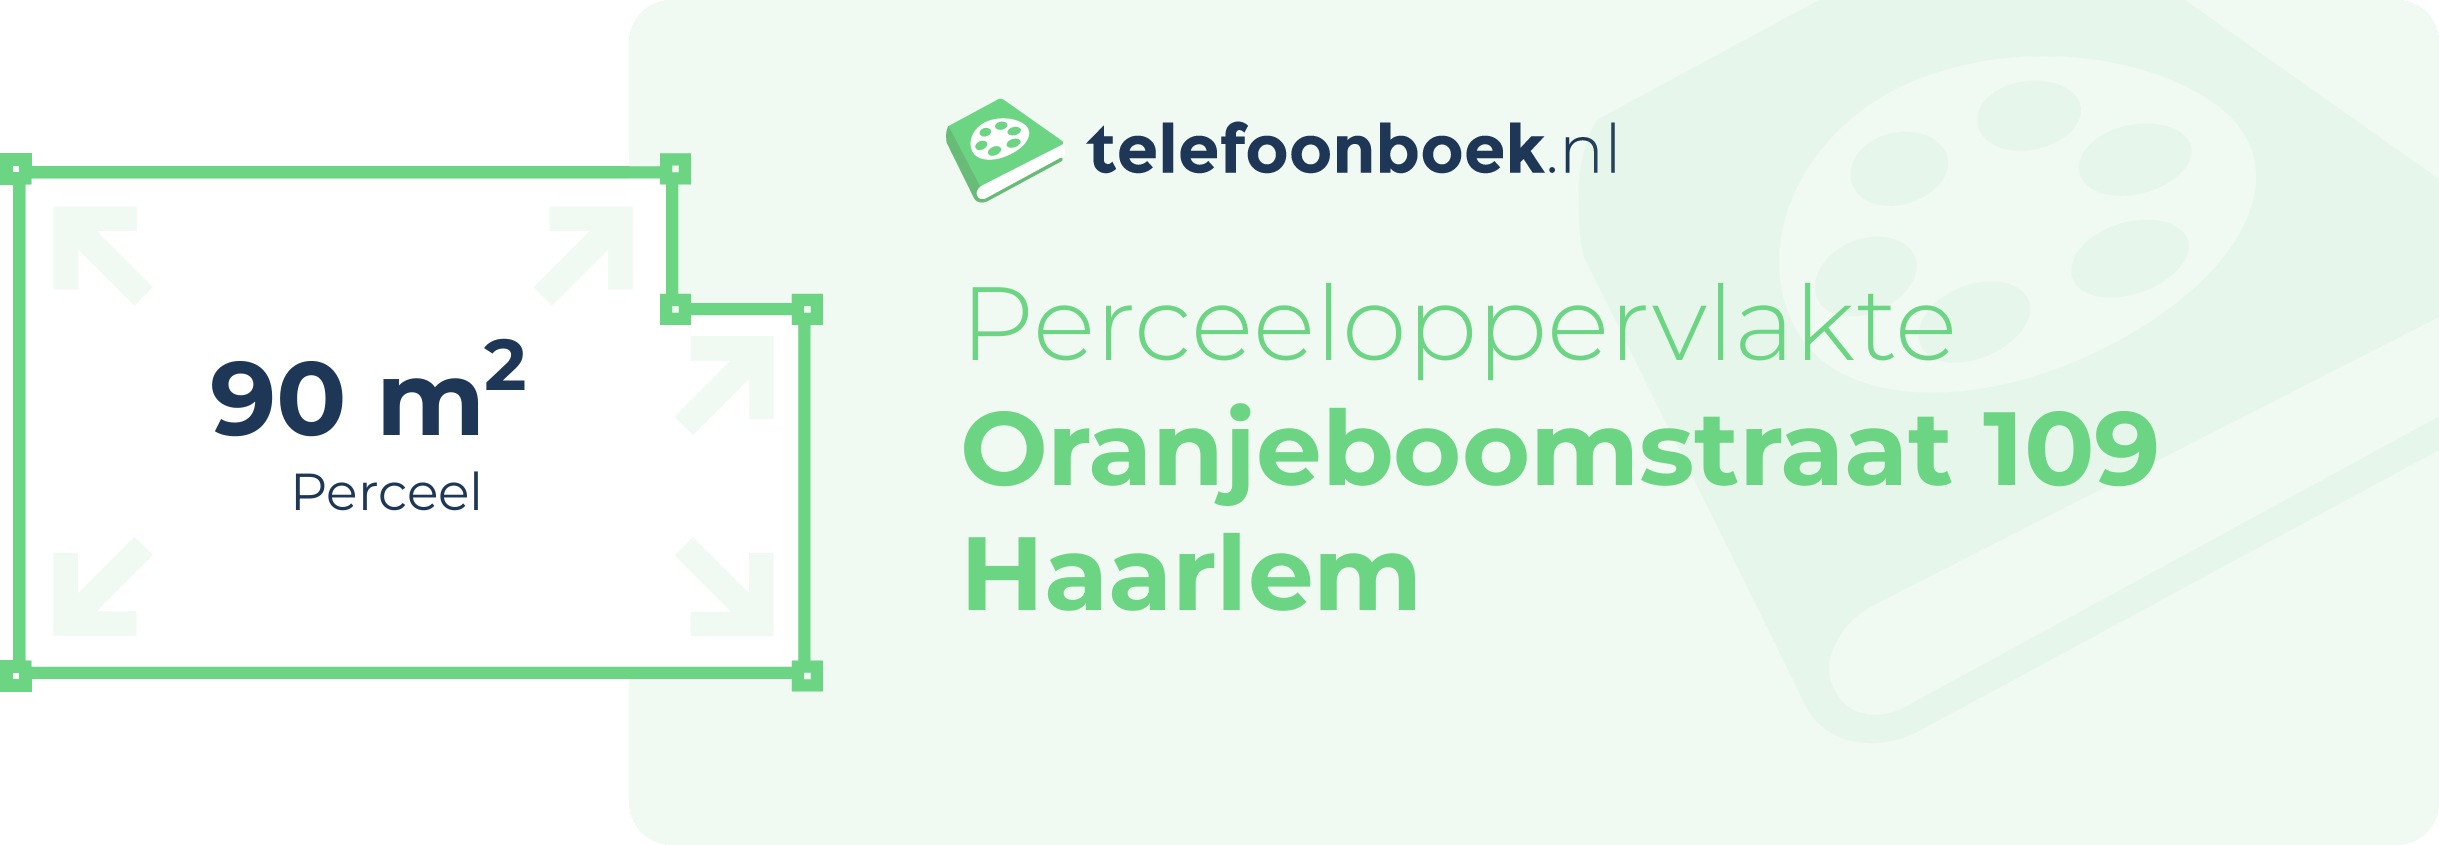 Perceeloppervlakte Oranjeboomstraat 109 Haarlem